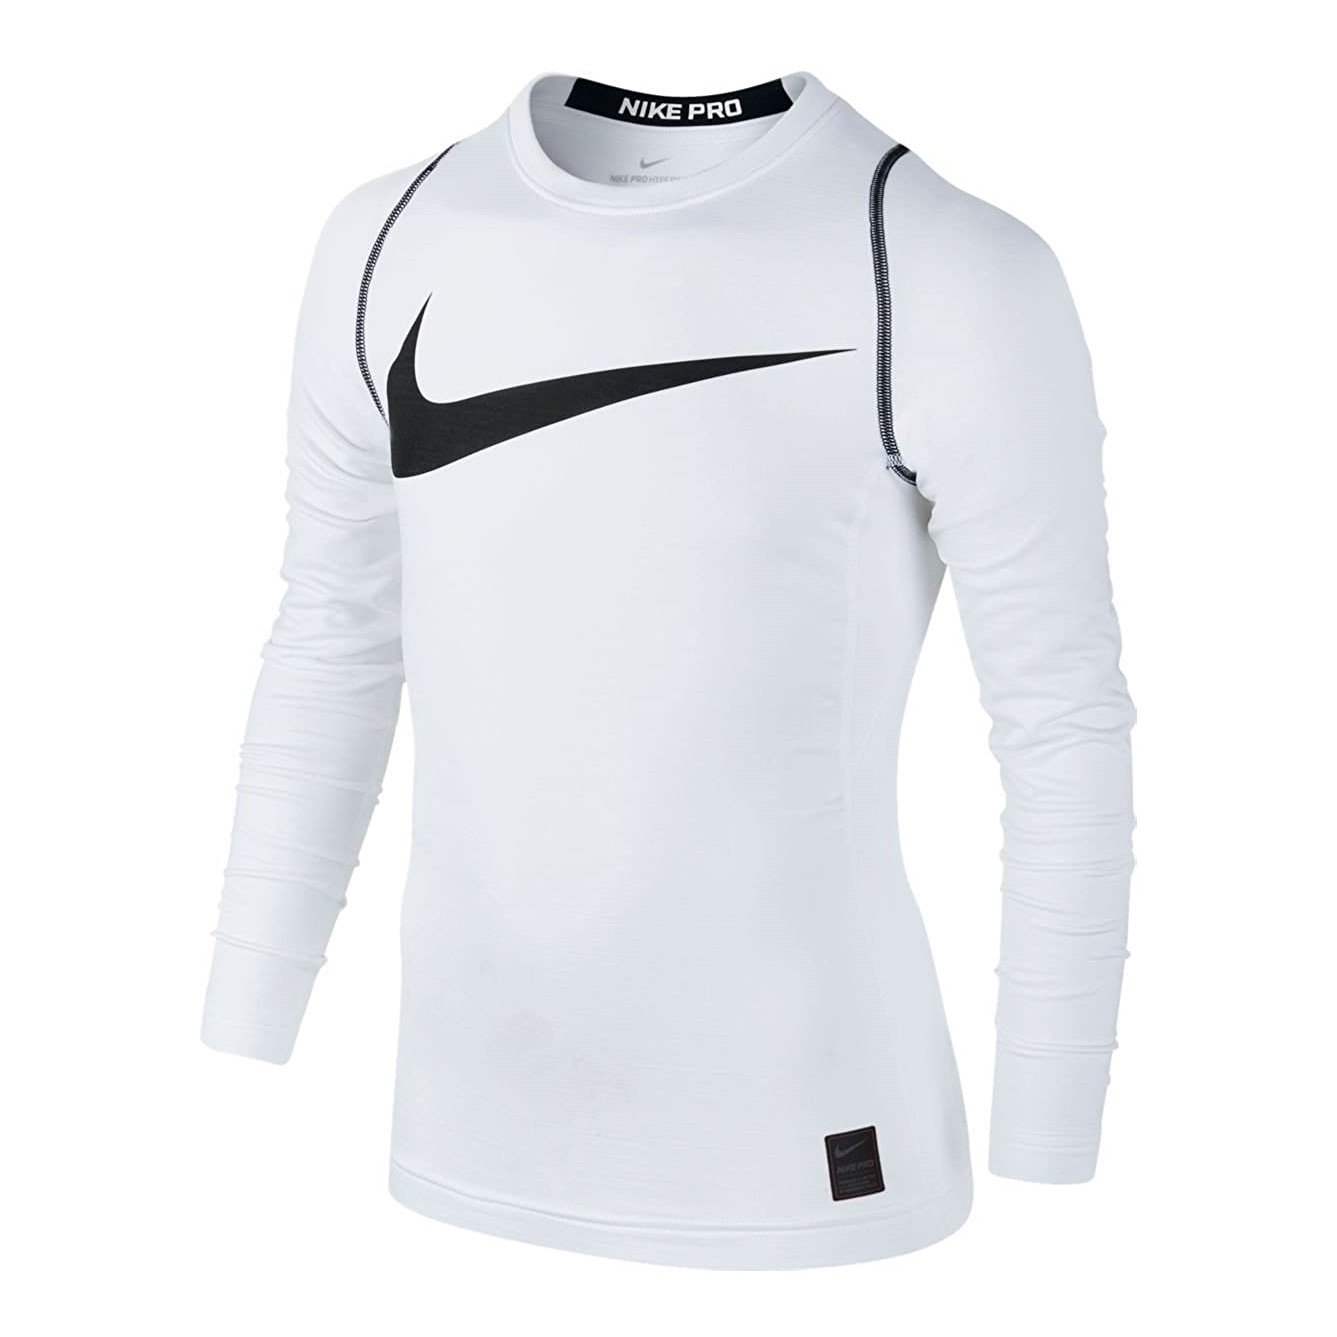 Nike Pro Boys Long Sleeve Shirt (white)